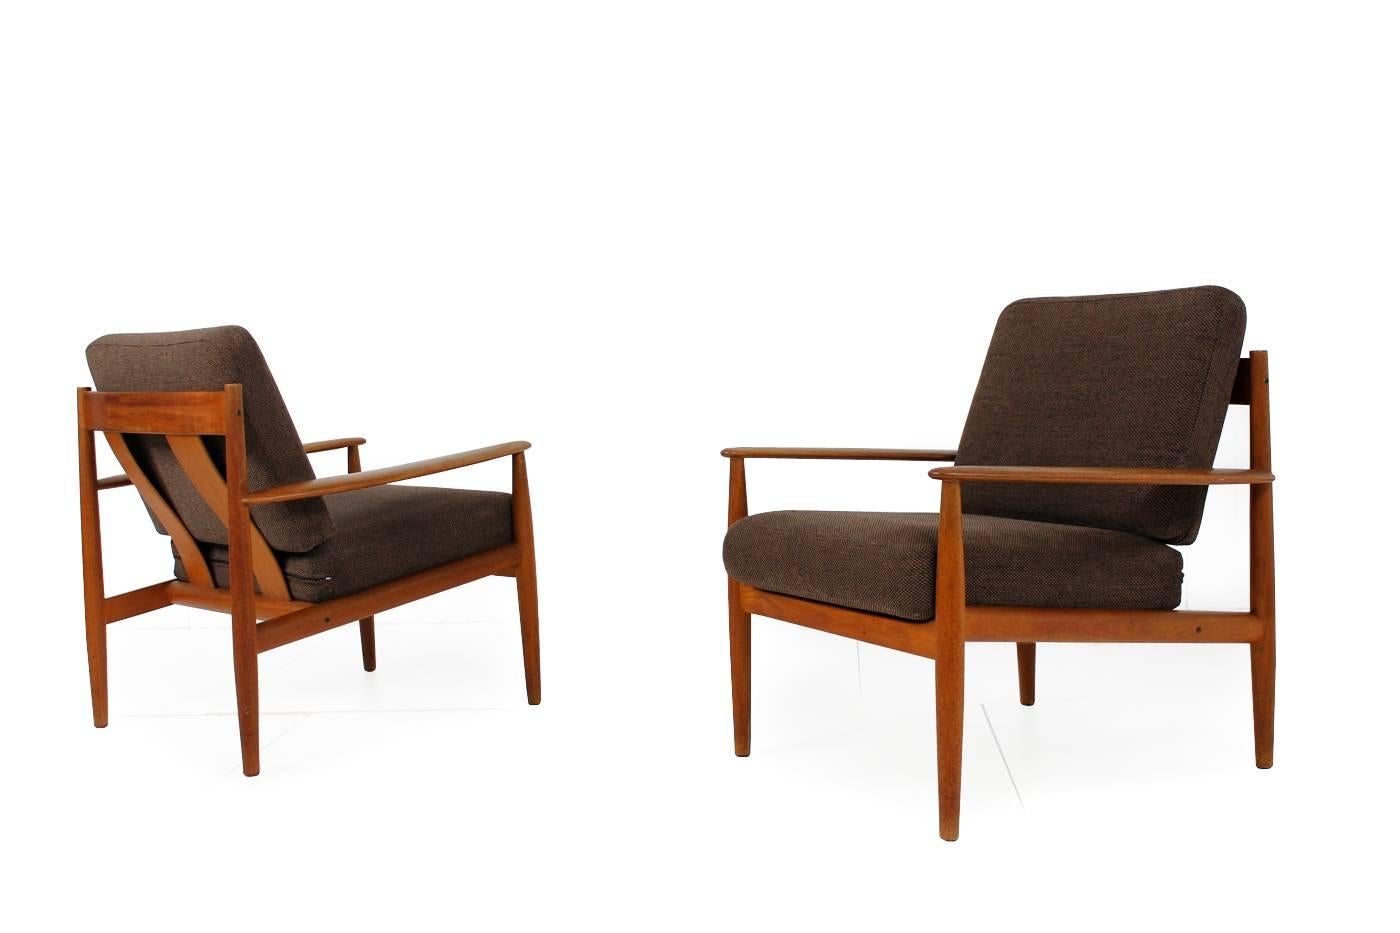 Danish Pair of 1960s Grete Jalk Teak Easy Chairs, France & Son, Denmark, Midcentury